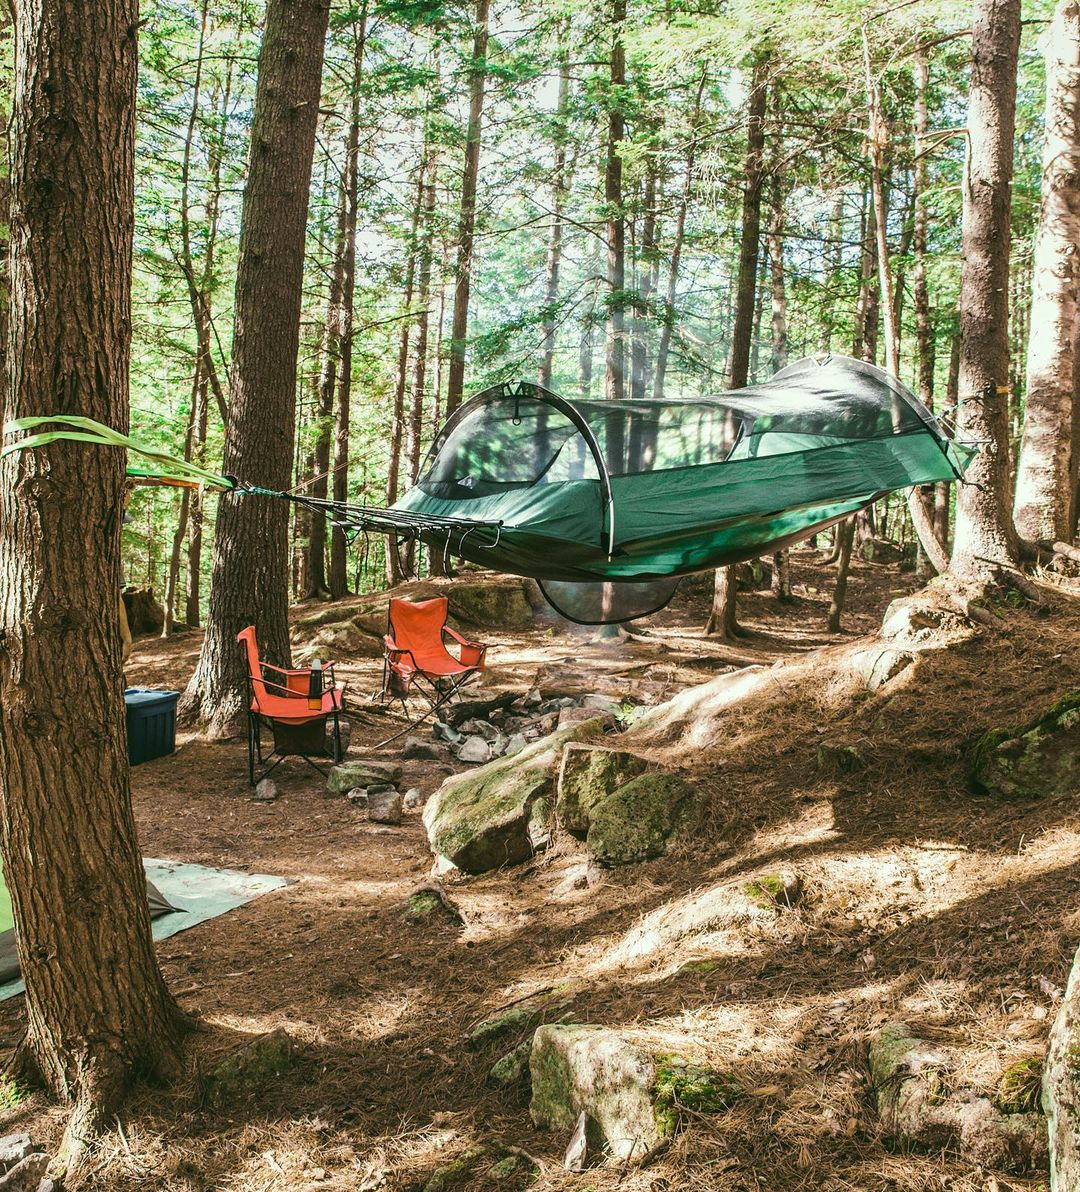 Camping Hammock Between Two Trees. Photo by Instagram user @lawsonhammock